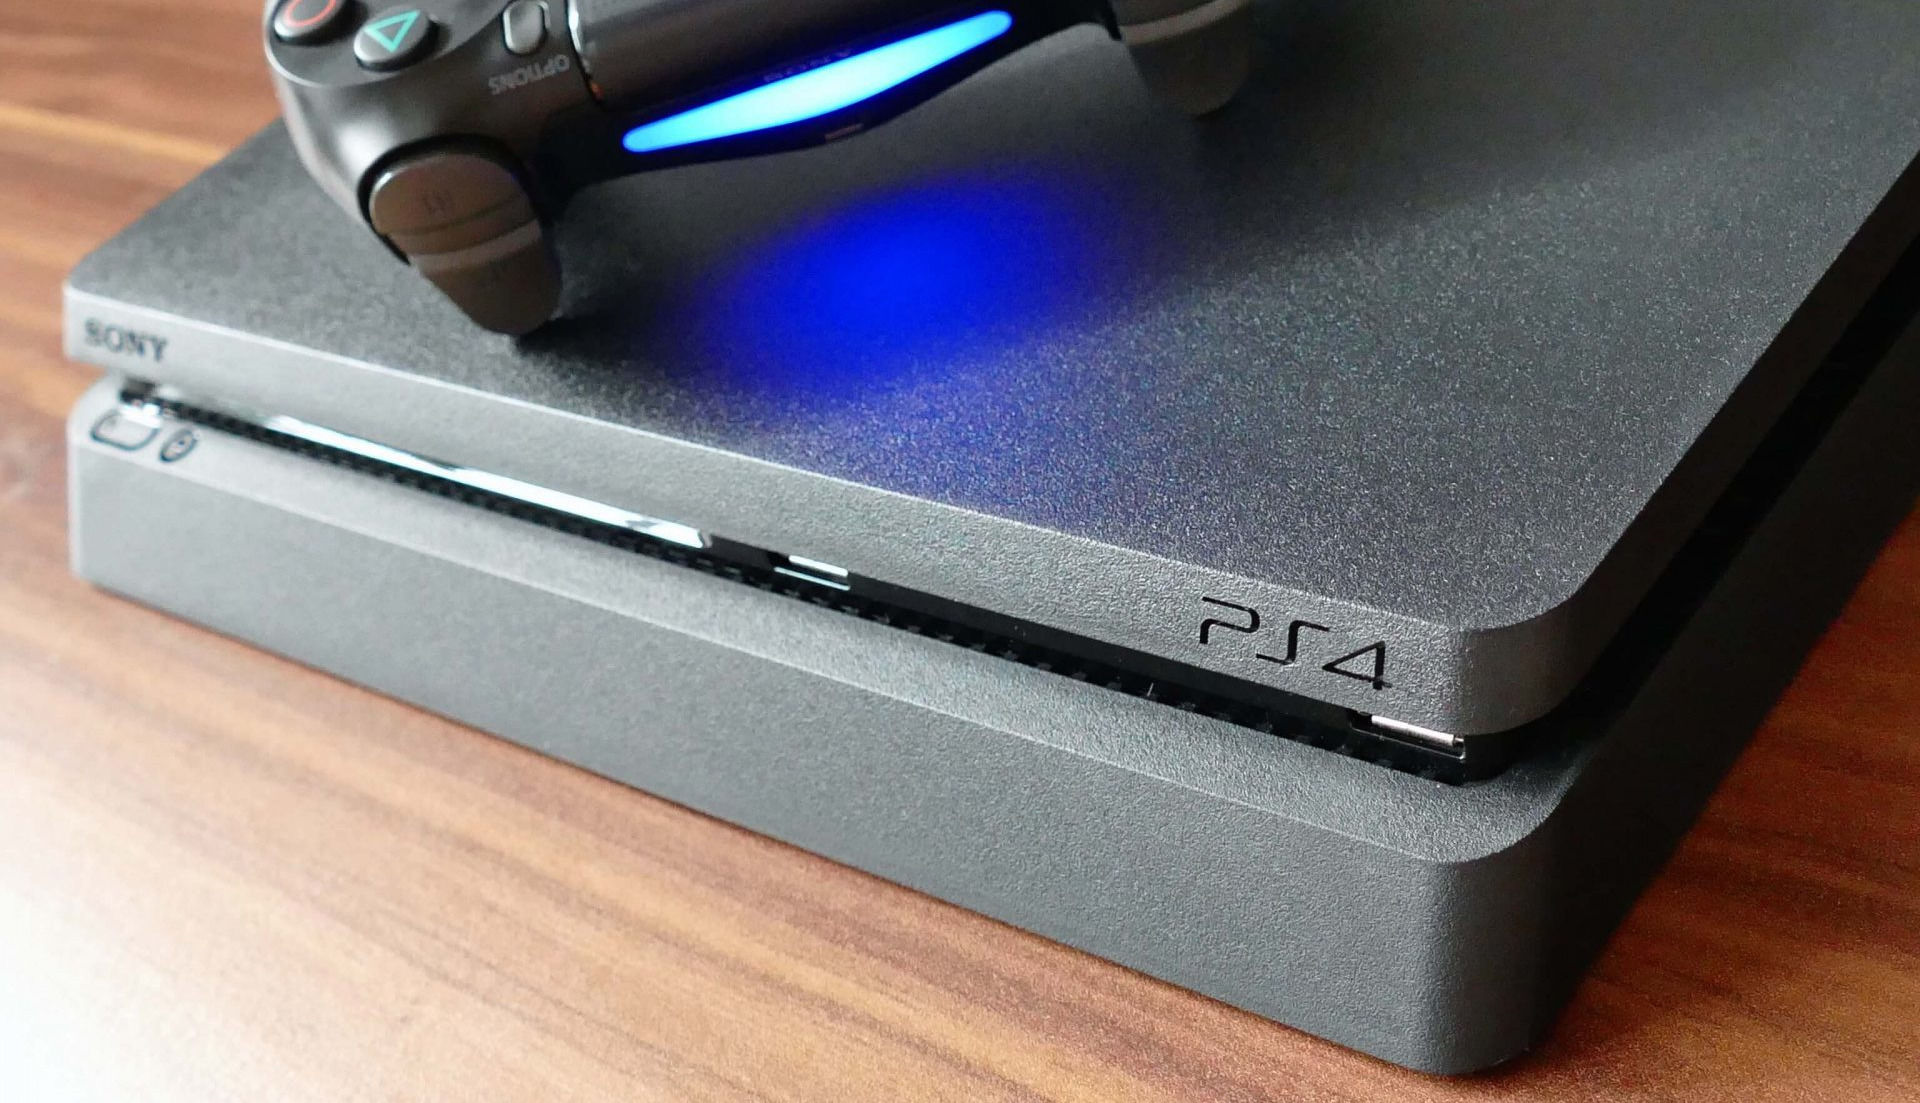 Консоль больше не запускается": Новая прошивка может вывести PS4 из строя,  игроки массово жалуются на проблемы | GameMAG